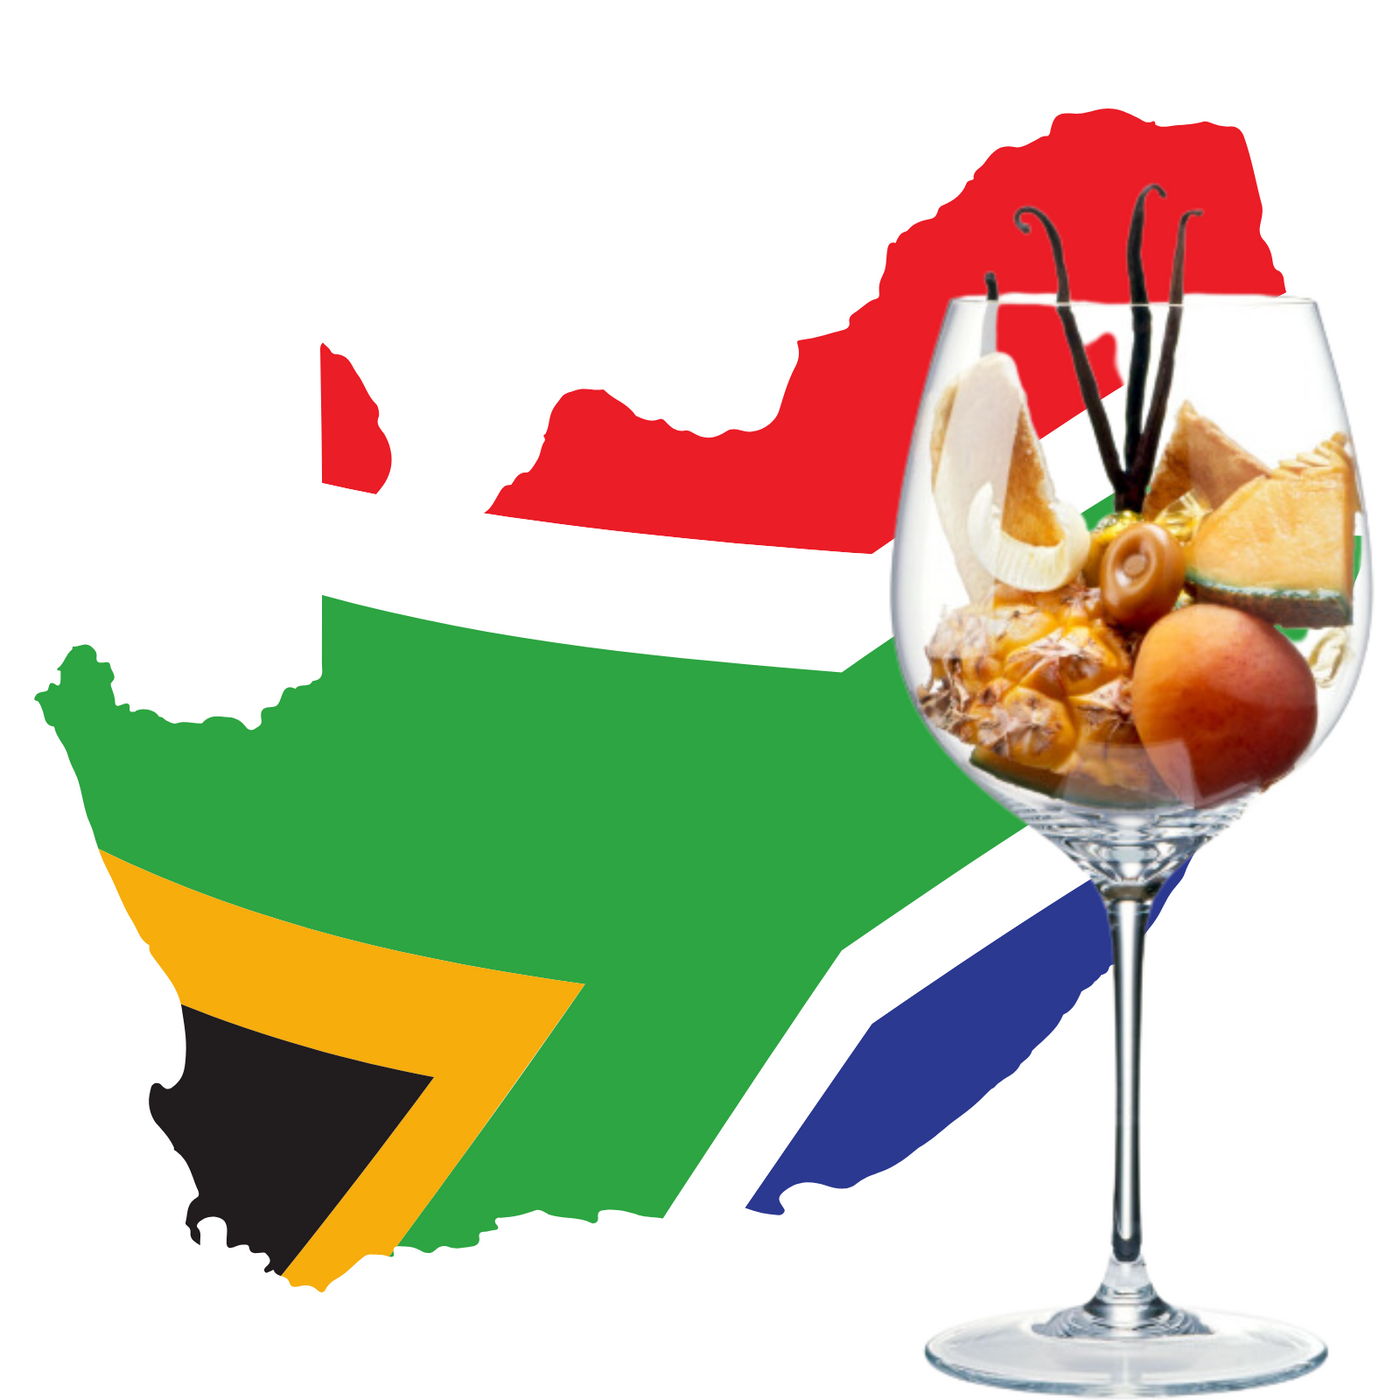 Chardonnay wijnen uit Zuid-Afrika - Flesjewijn.com